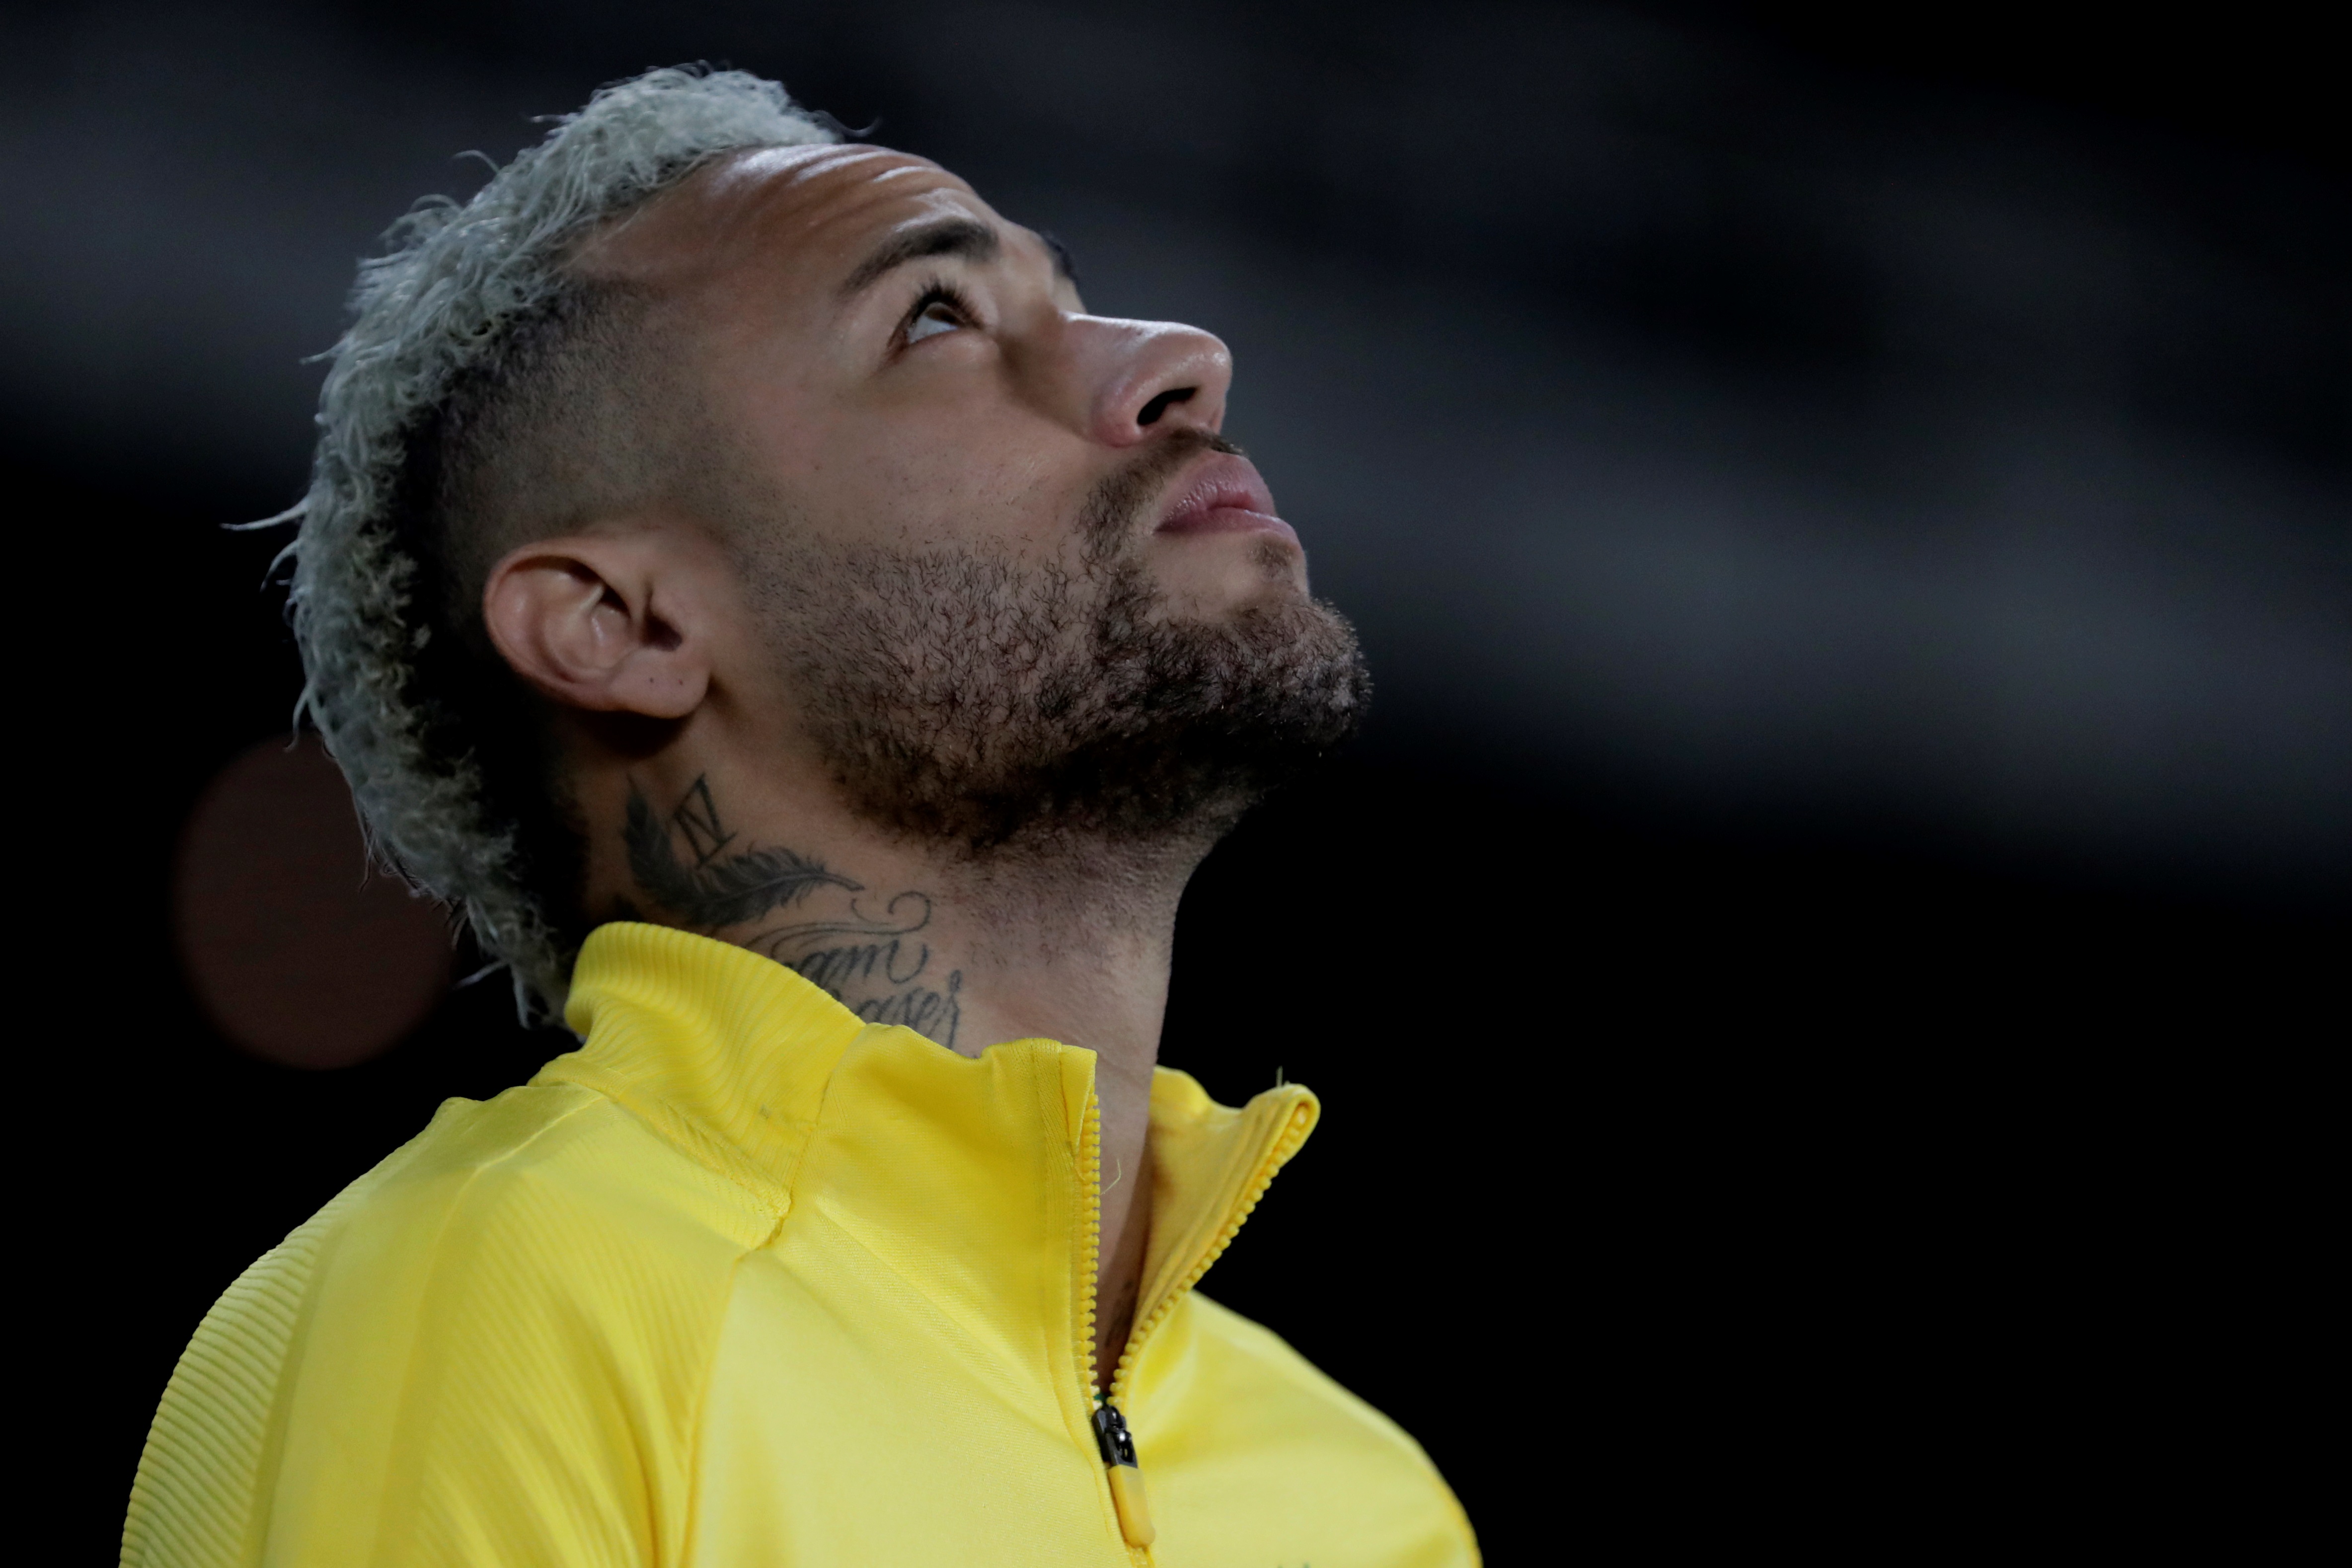 Neymar agradeció mensajes de apoyo y aclaró que percance del avión fue “solo un susto”